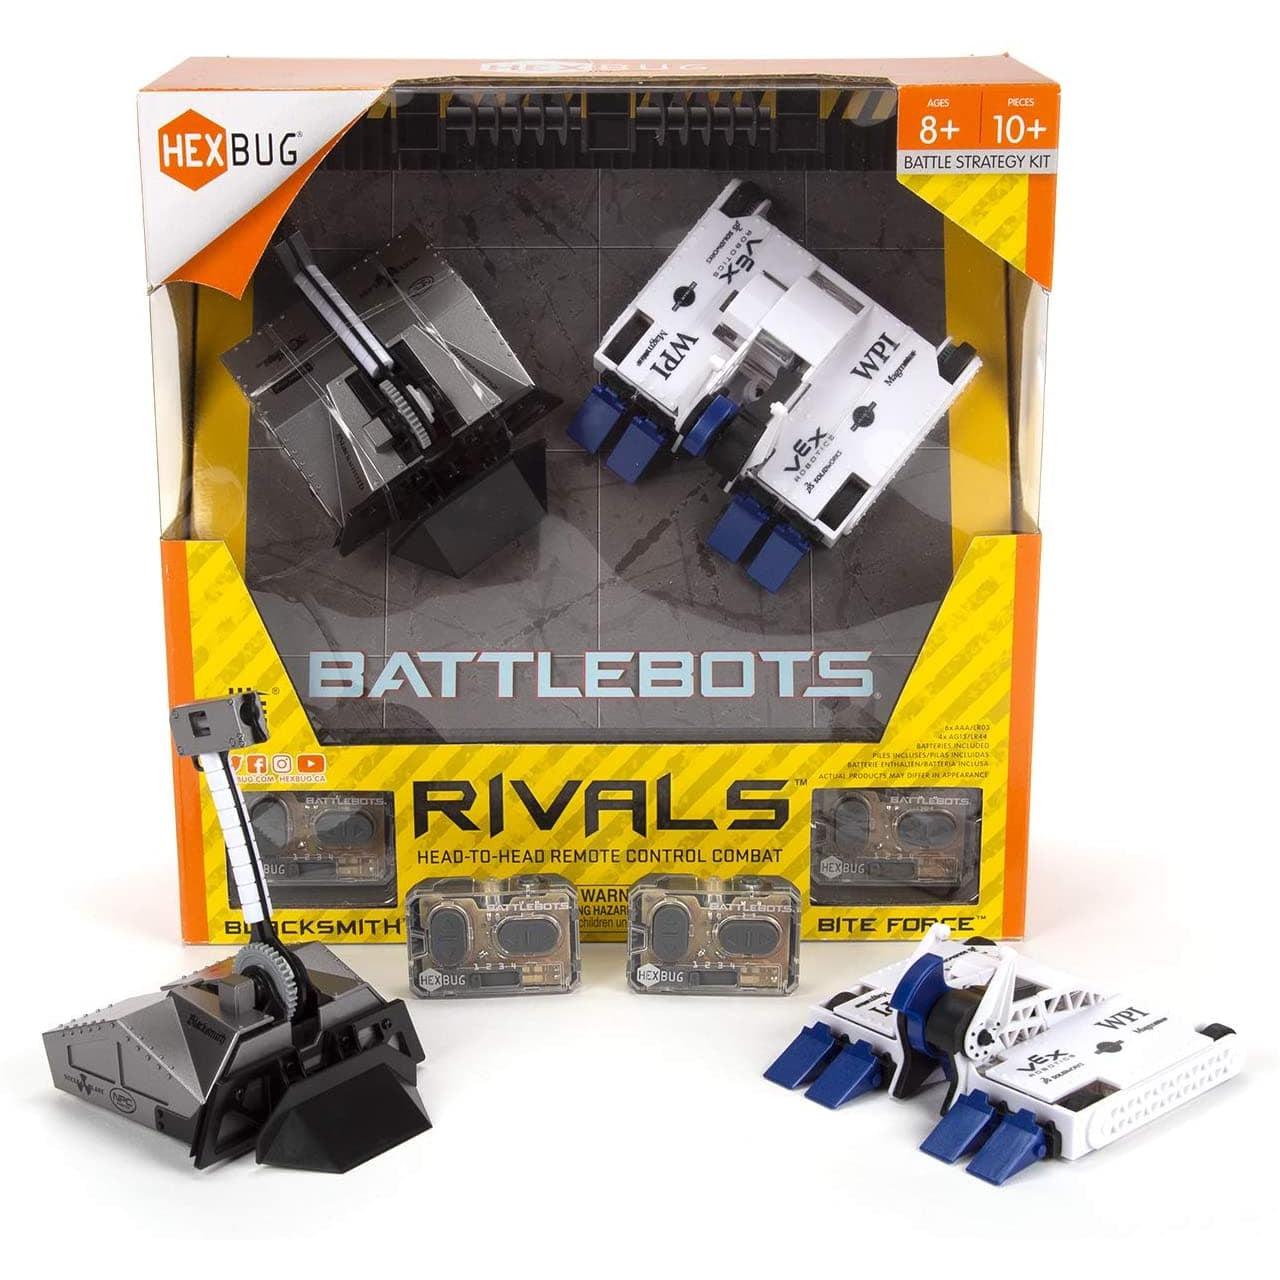 Spin Master-Hexbug Battlebots Rivals V4 - Blacksmith vs. Bite Force-6069024-Legacy Toys